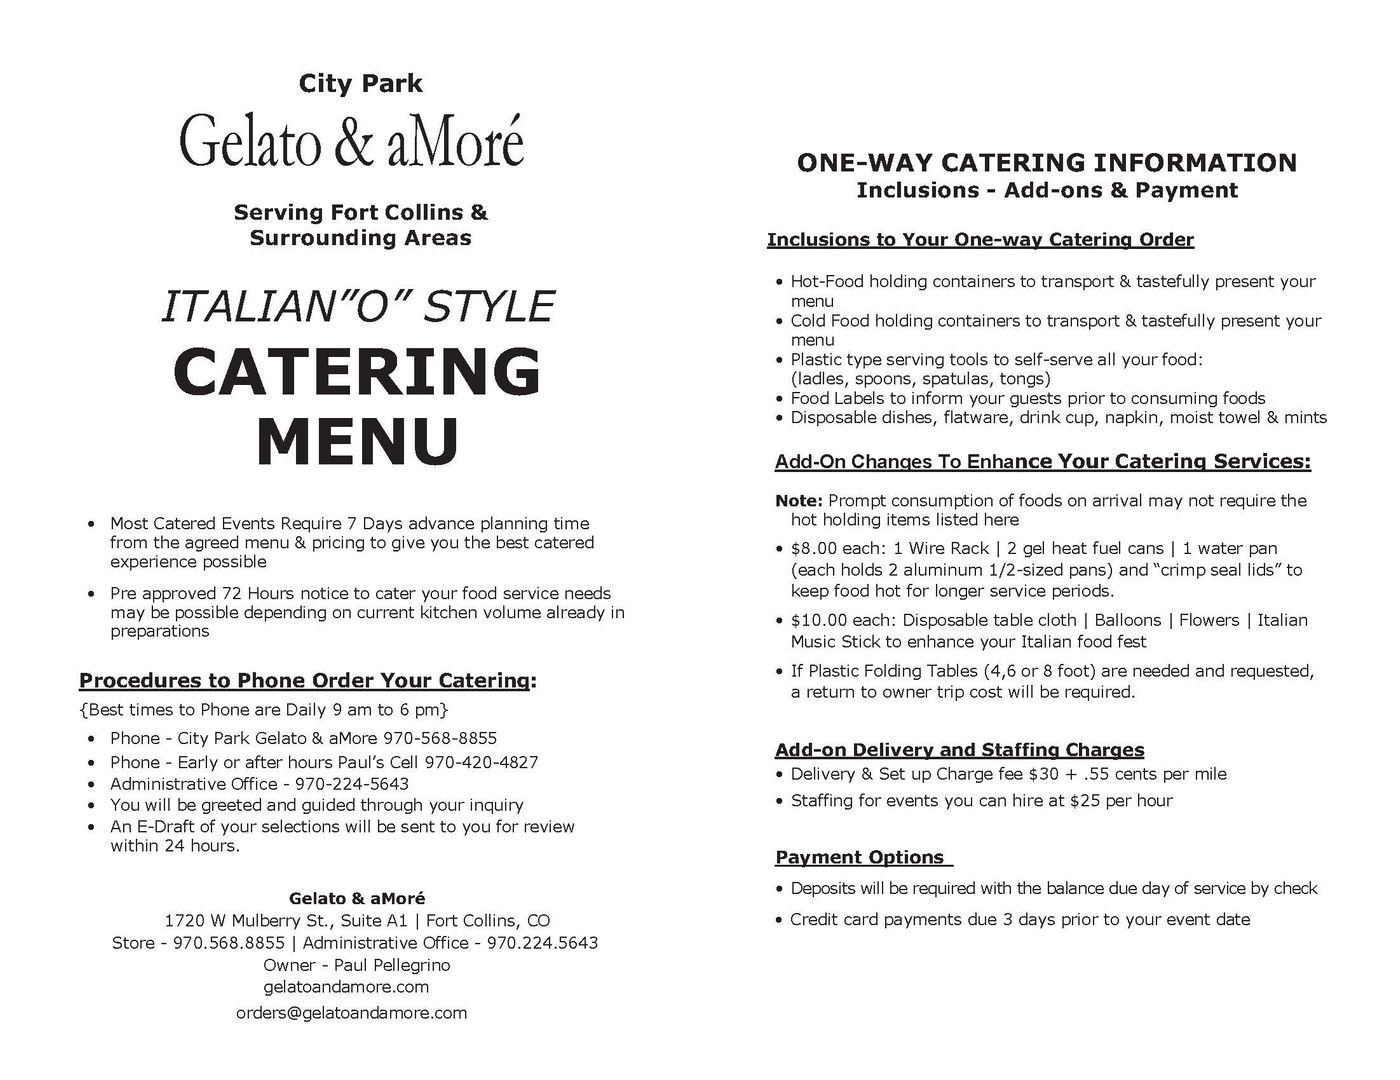 GelatoaMore Catering  Menu Updated 4-11-23_Page_1.jpg